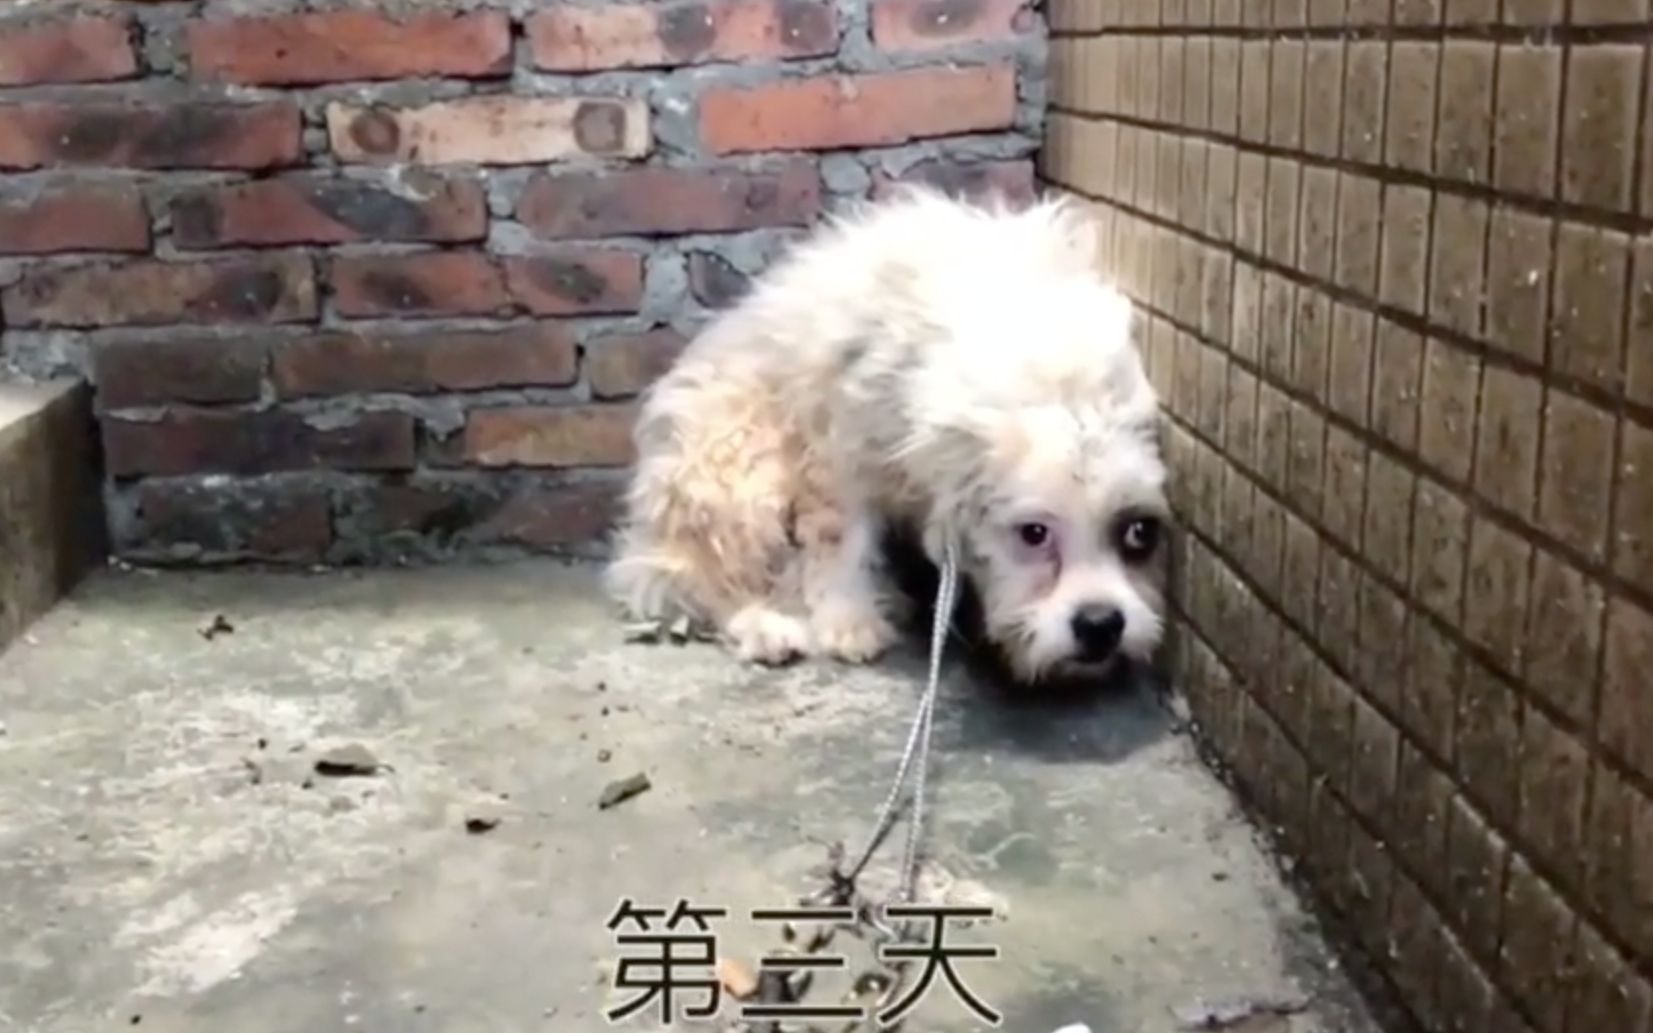 “狗妈妈”郝克玉 20年救上万流浪狗_图说中国人的生活_图片频道_央视网